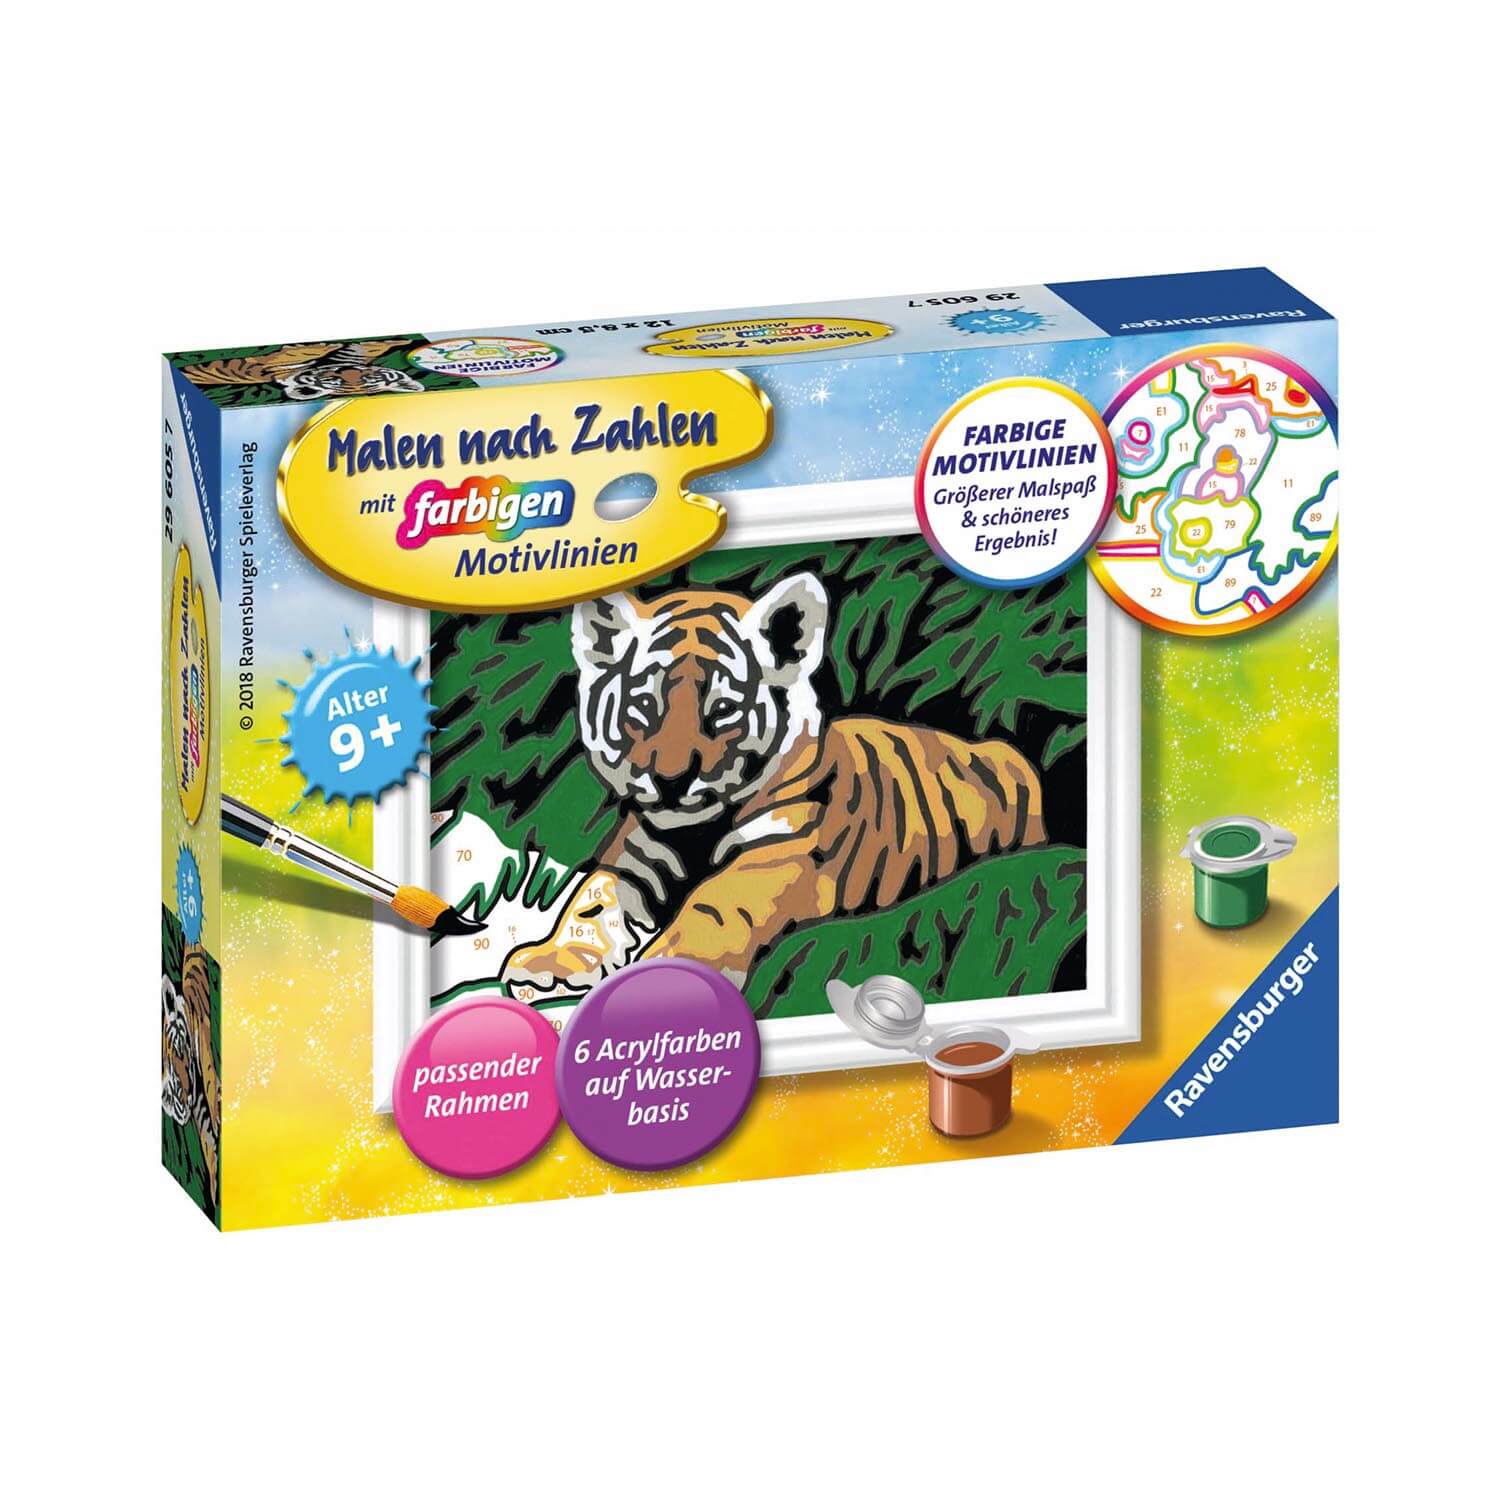 Malen nach Zahlen - Süßer Tiger mit 6 Acrylfarben auf Wasserbasis und farbigen Motivlinien, ab 7 Jahren